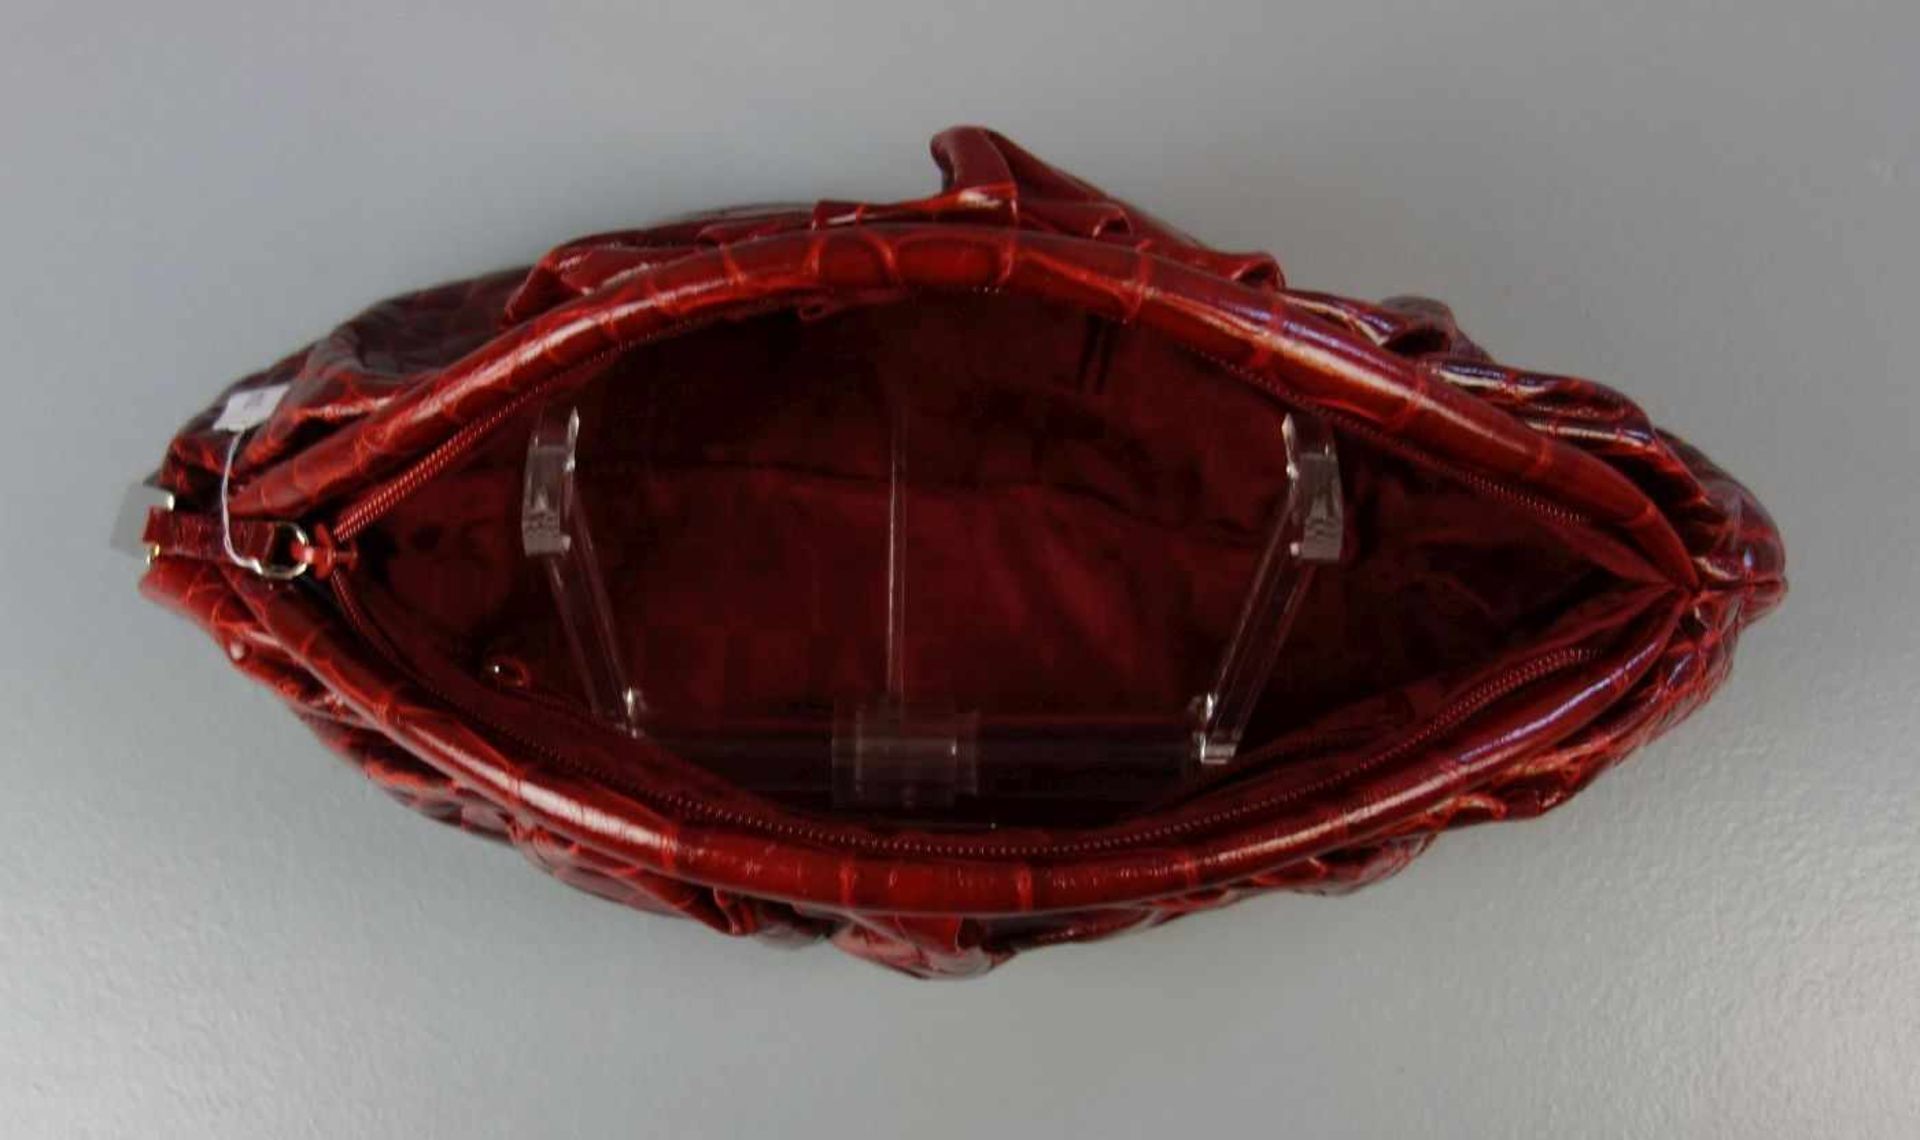 FURLA - CLUTCH / HANDTASCHE / handbag, Manufaktur Furla, Italien (seit 1927), rotes Rindsleder mit - Bild 3 aus 3